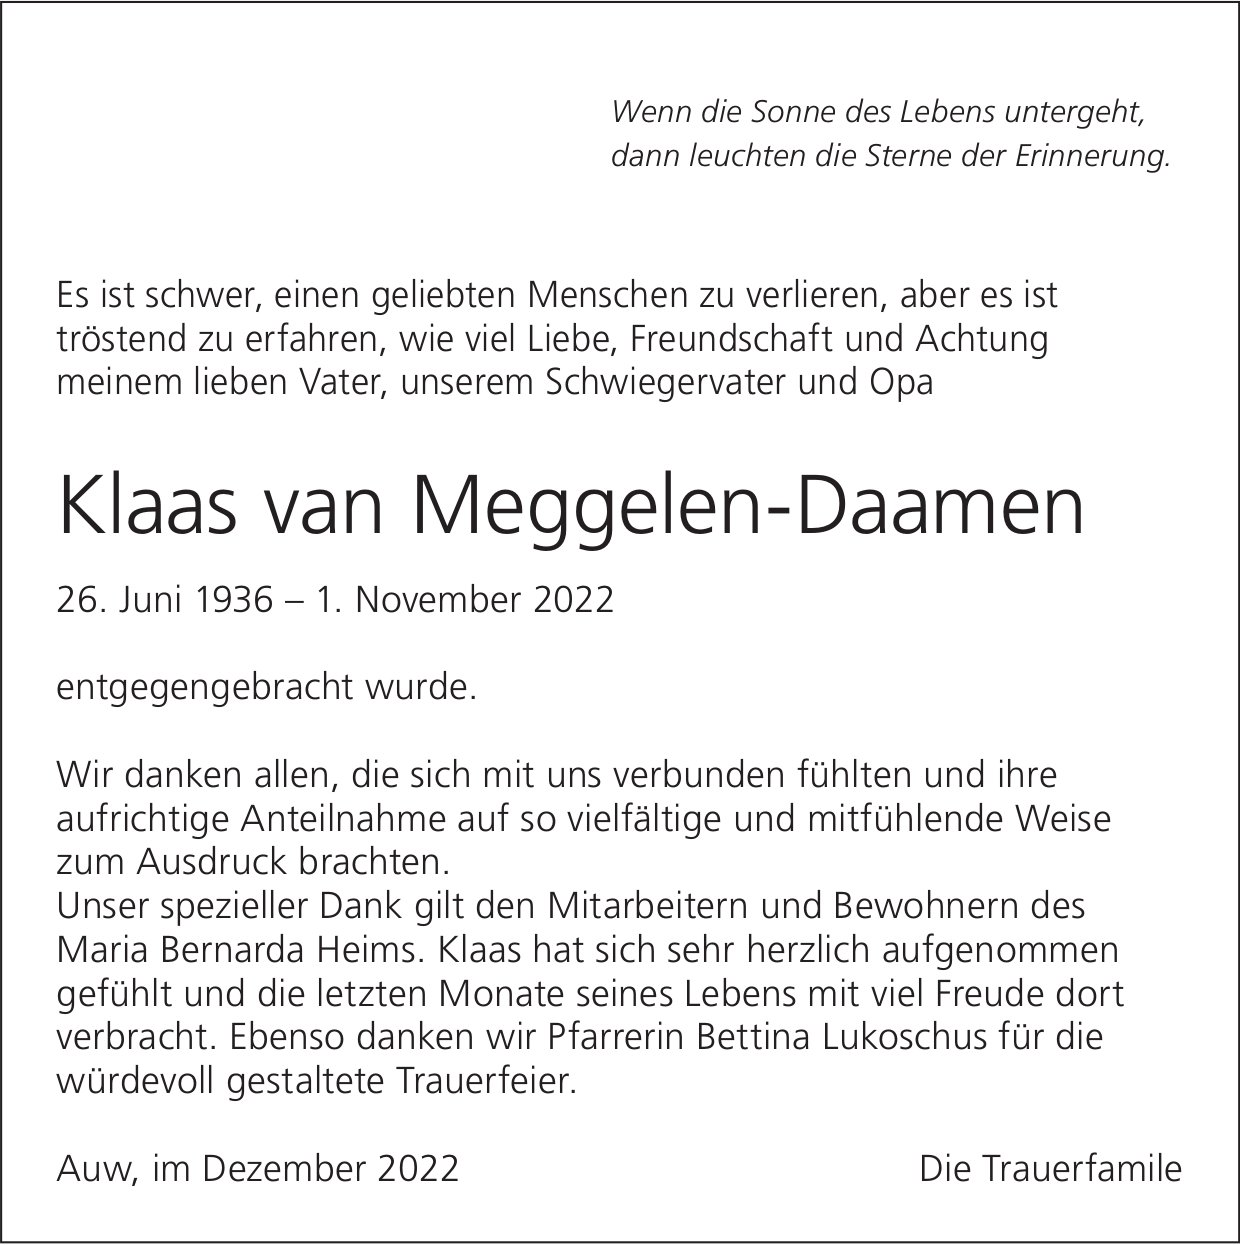 Meggelen-Daamen Klaas van, im Dezember 2022 / DS